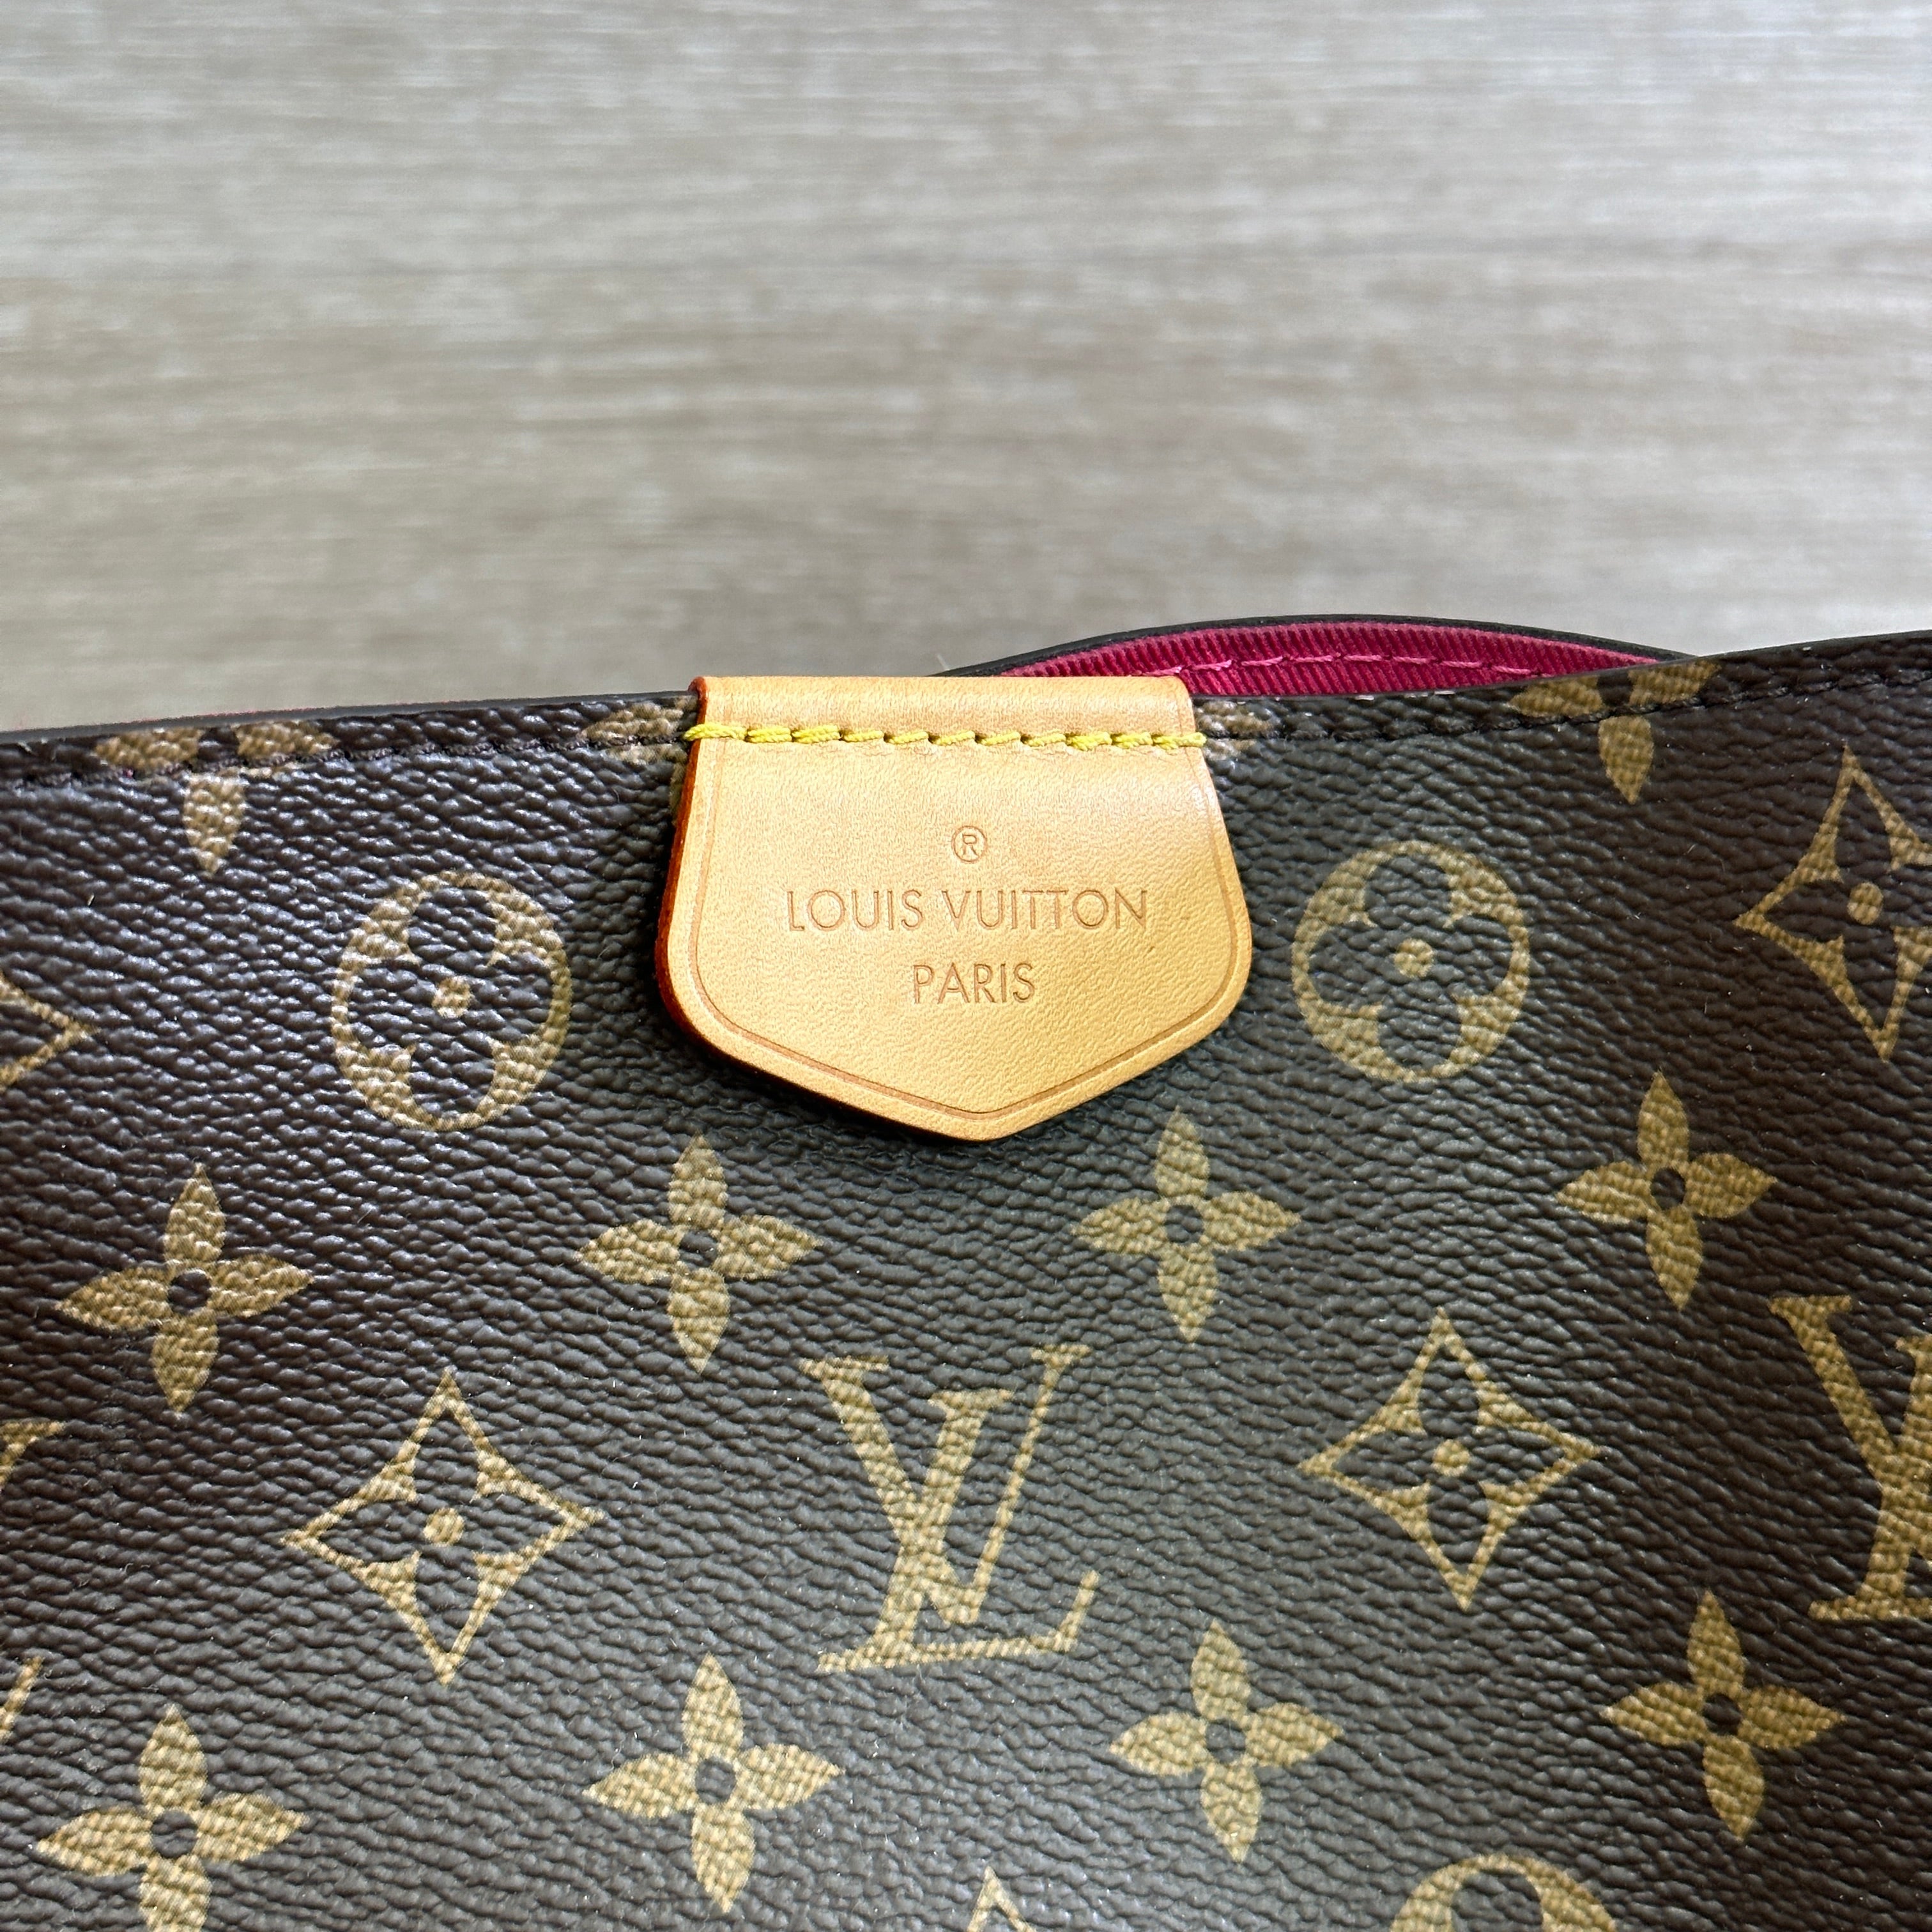 An Overview: Louis Vuitton Graceful vs Neverfull